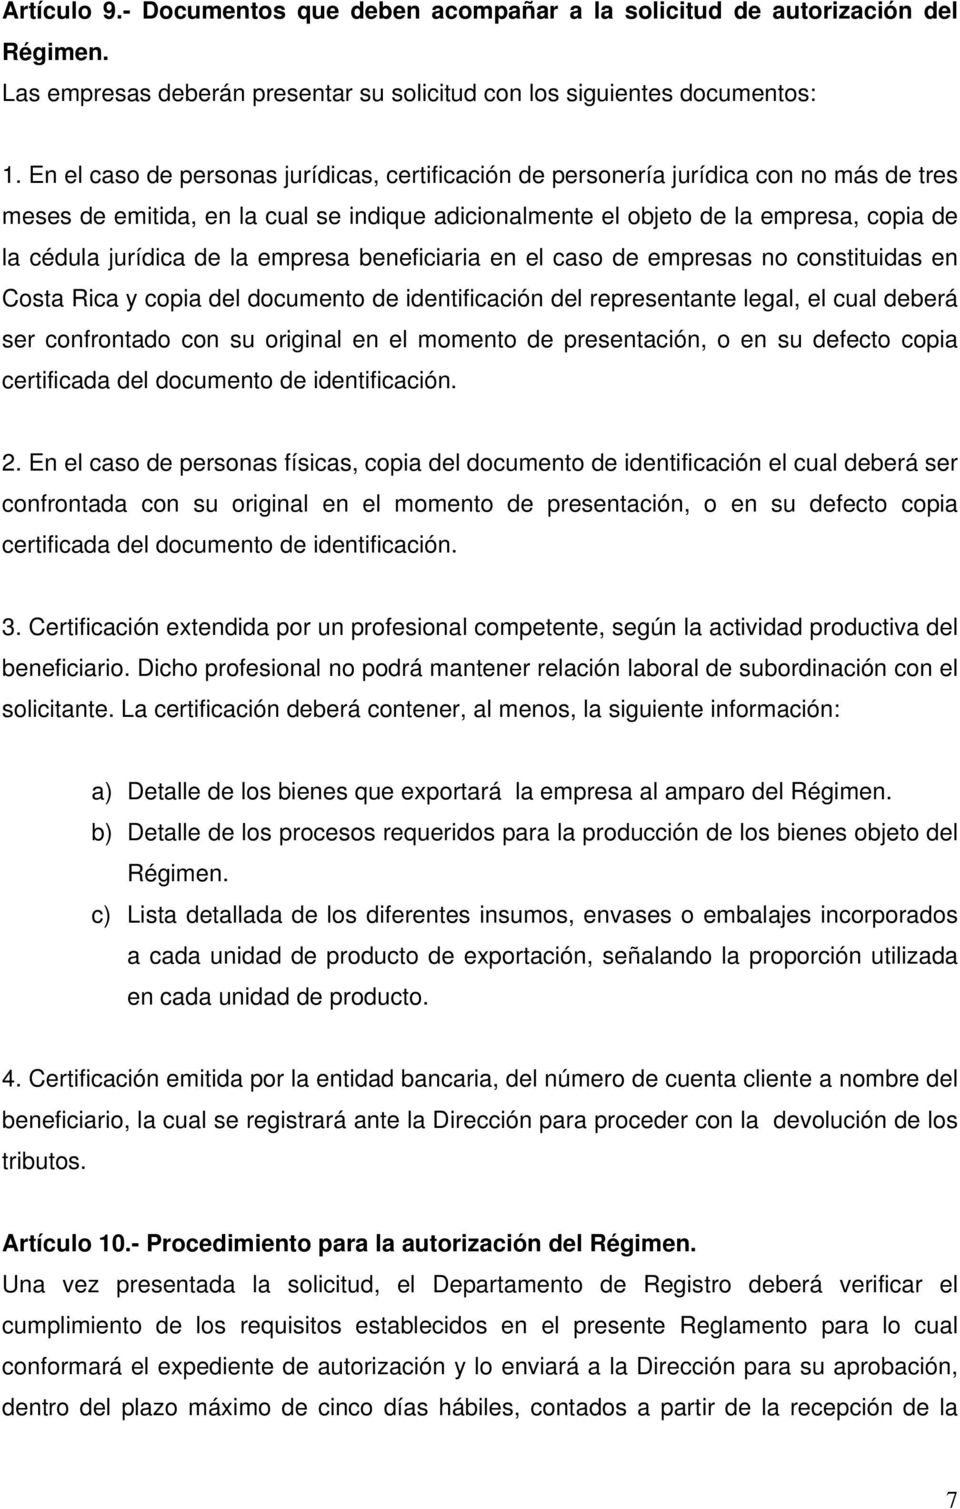 de la empresa beneficiaria en el caso de empresas no constituidas en Costa Rica y copia del documento de identificación del representante legal, el cual deberá ser confrontado con su original en el